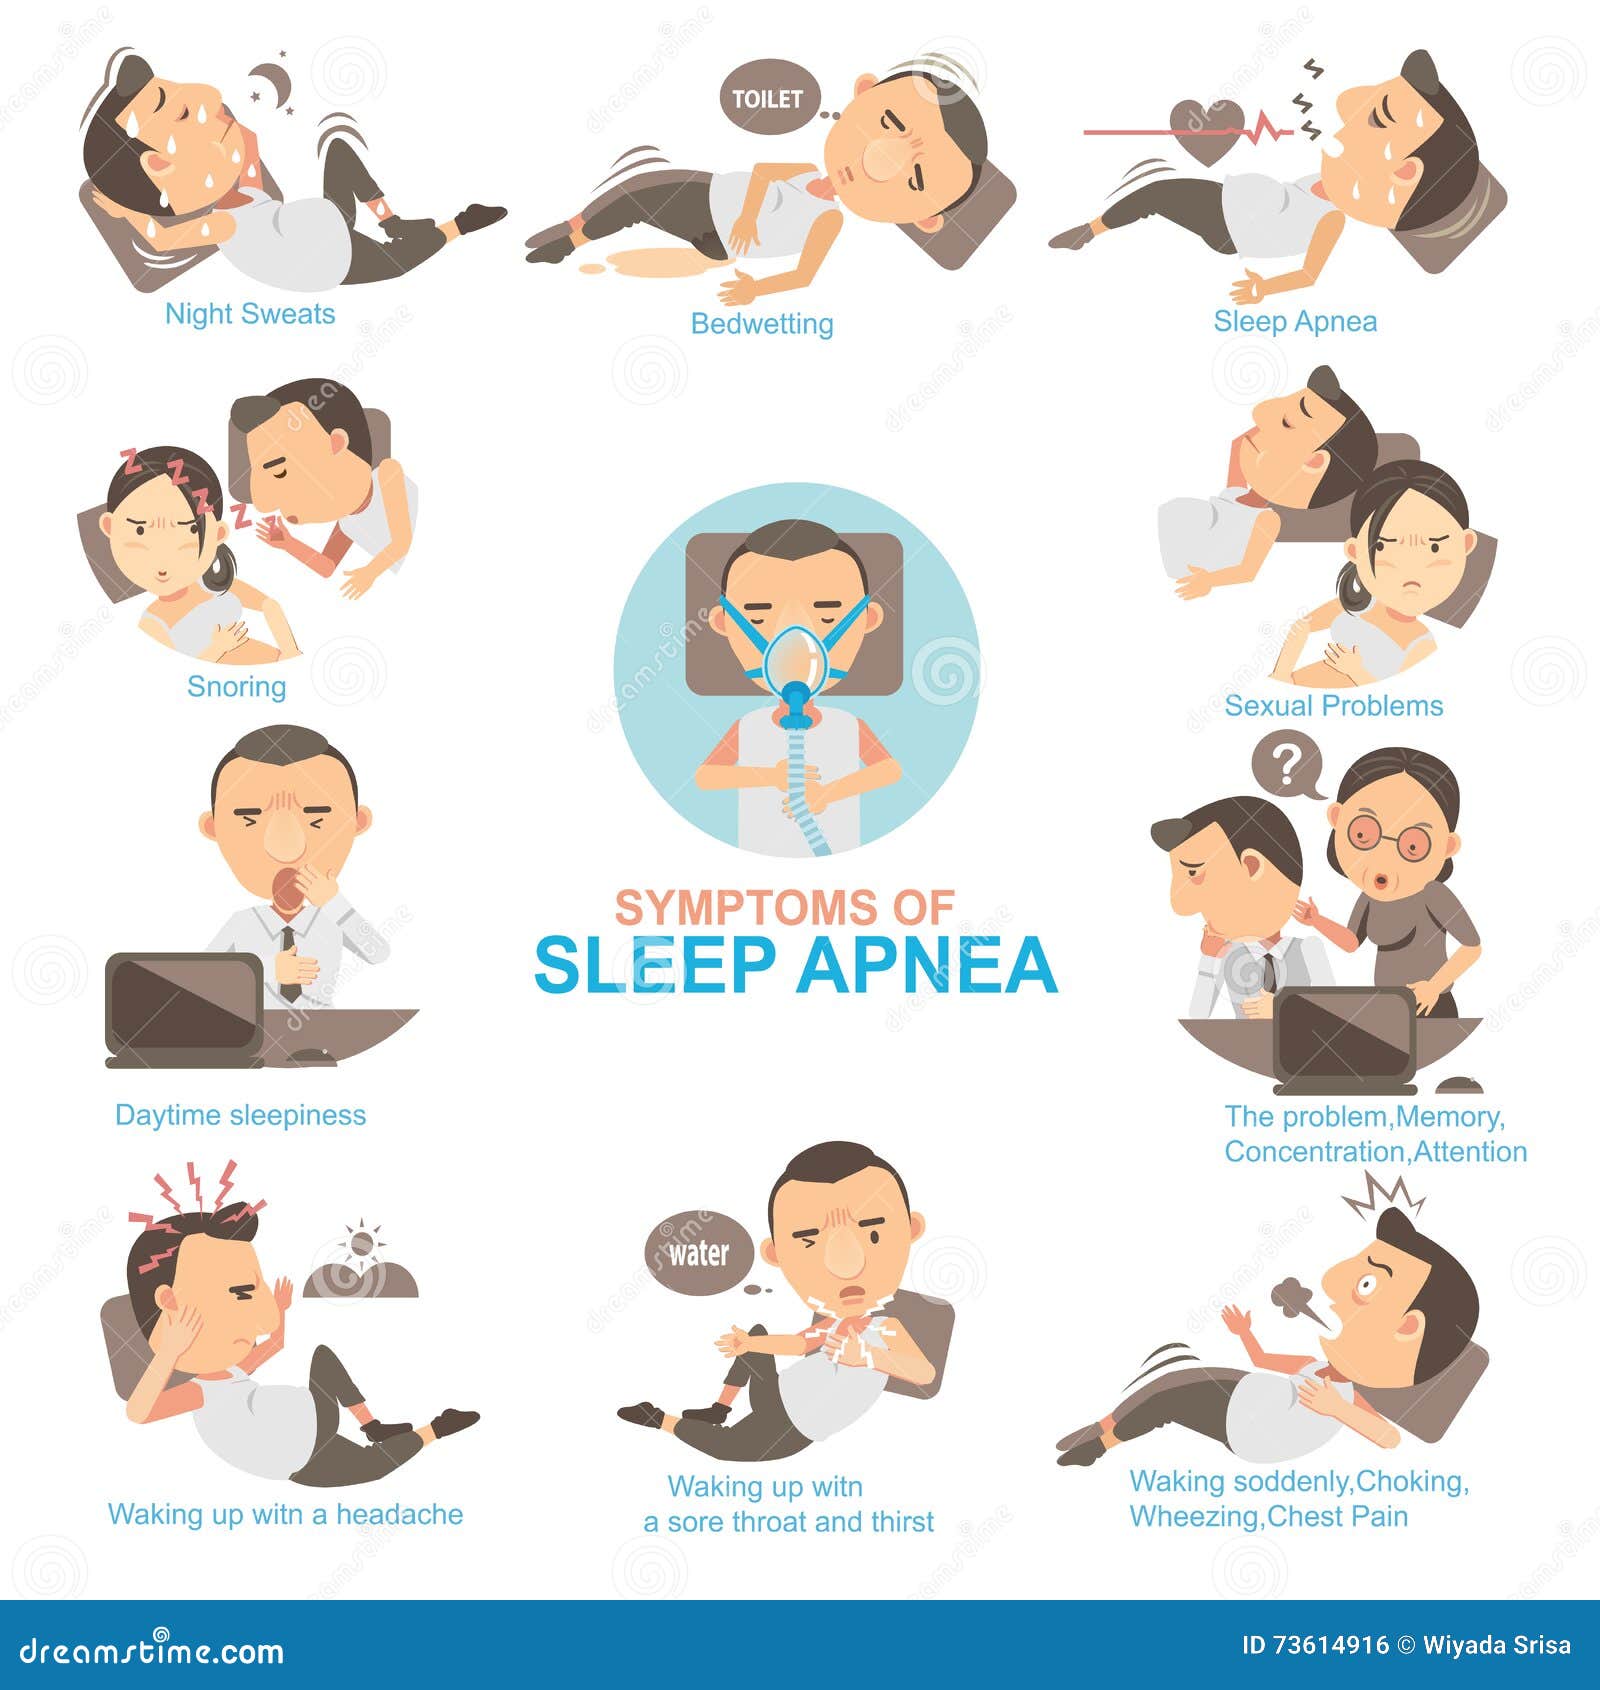 При засыпании останавливается. Синдром обструктивного апноэ сна. Апноэ во сне симптомы. Остановка дыхания во сне. Апноэ симптомы.